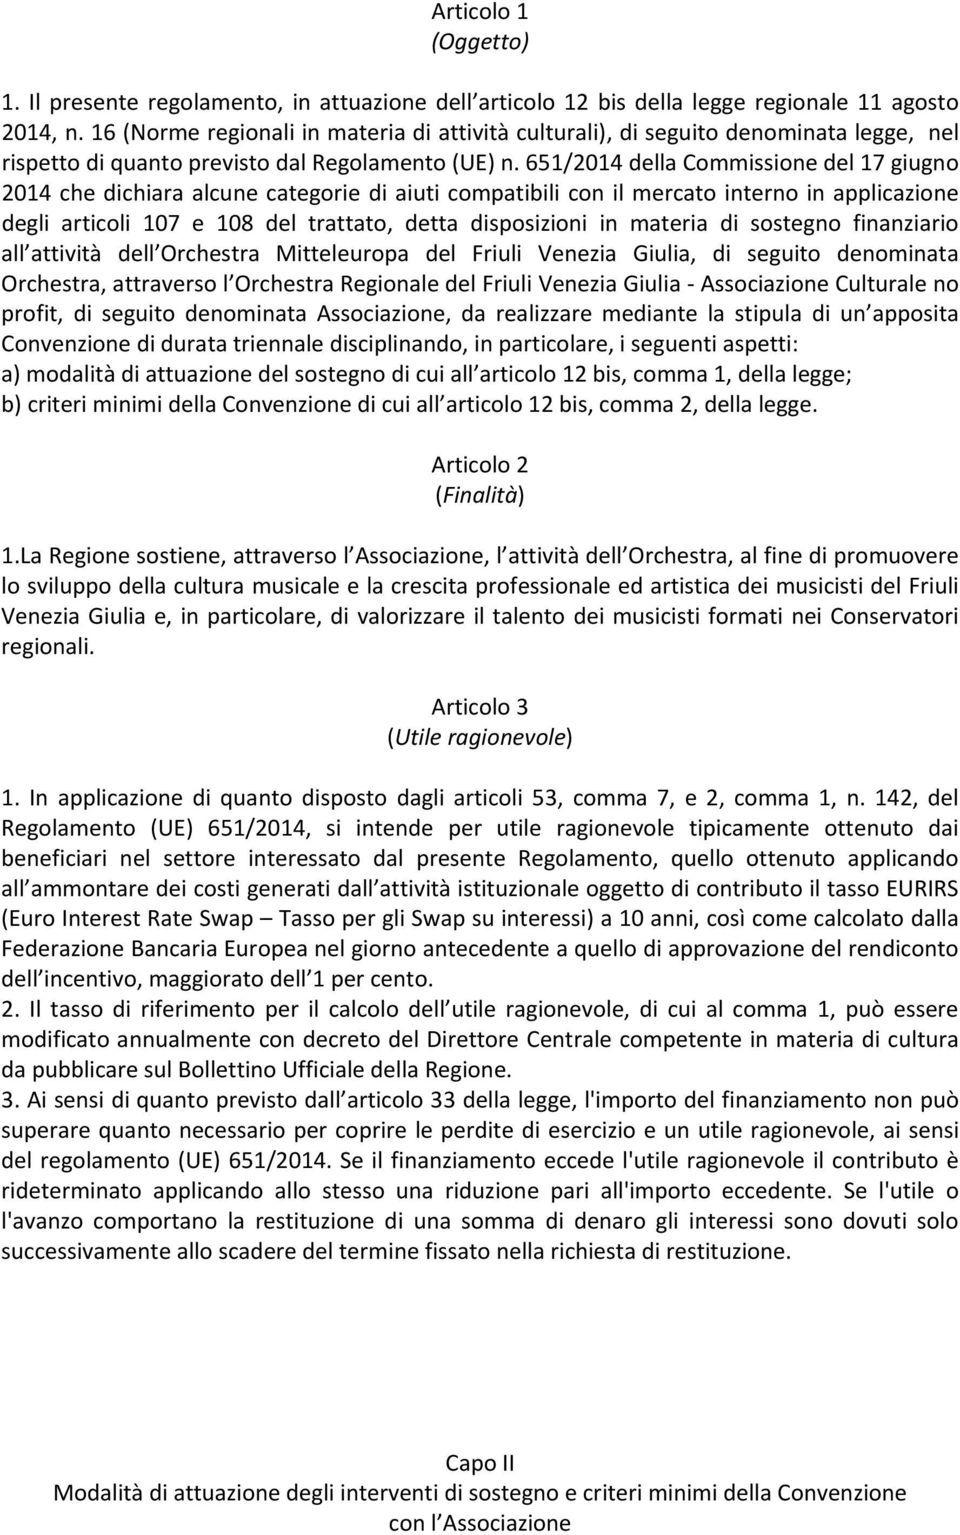 651/2014 della Commissione del 17 giugno 2014 che dichiara alcune categorie di aiuti compatibili con il mercato interno in applicazione degli articoli 107 e 108 del trattato, detta disposizioni in